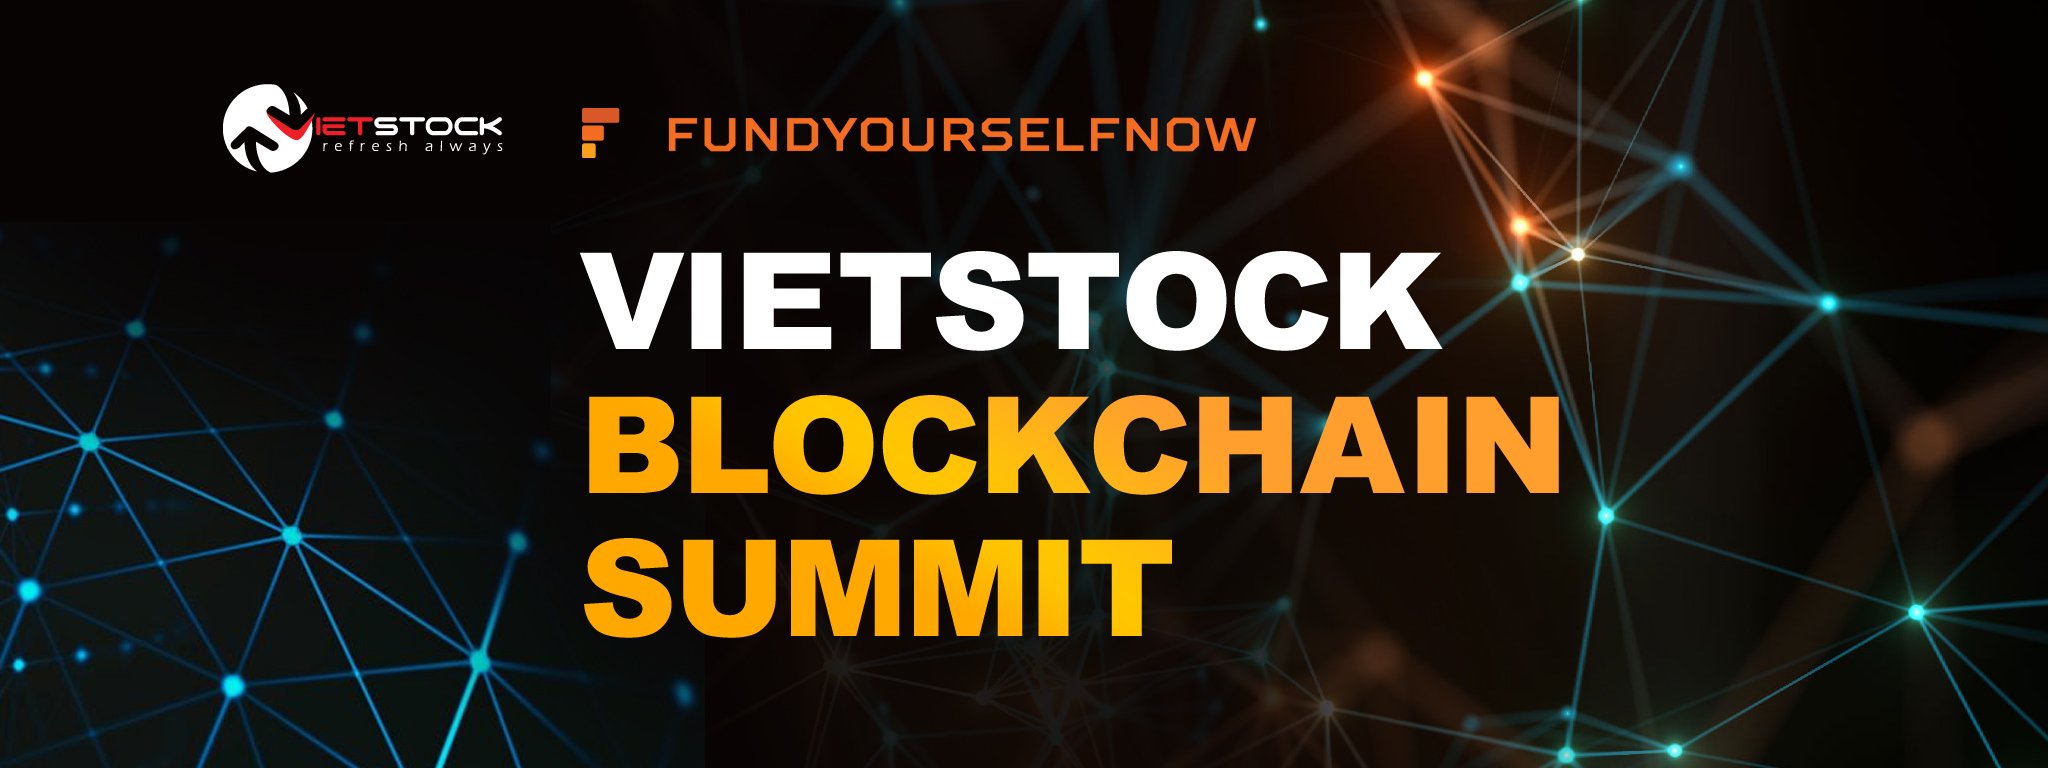 [QC] Vietstock Blockchain Summit sẽ diễn ra vào ngày 28/01